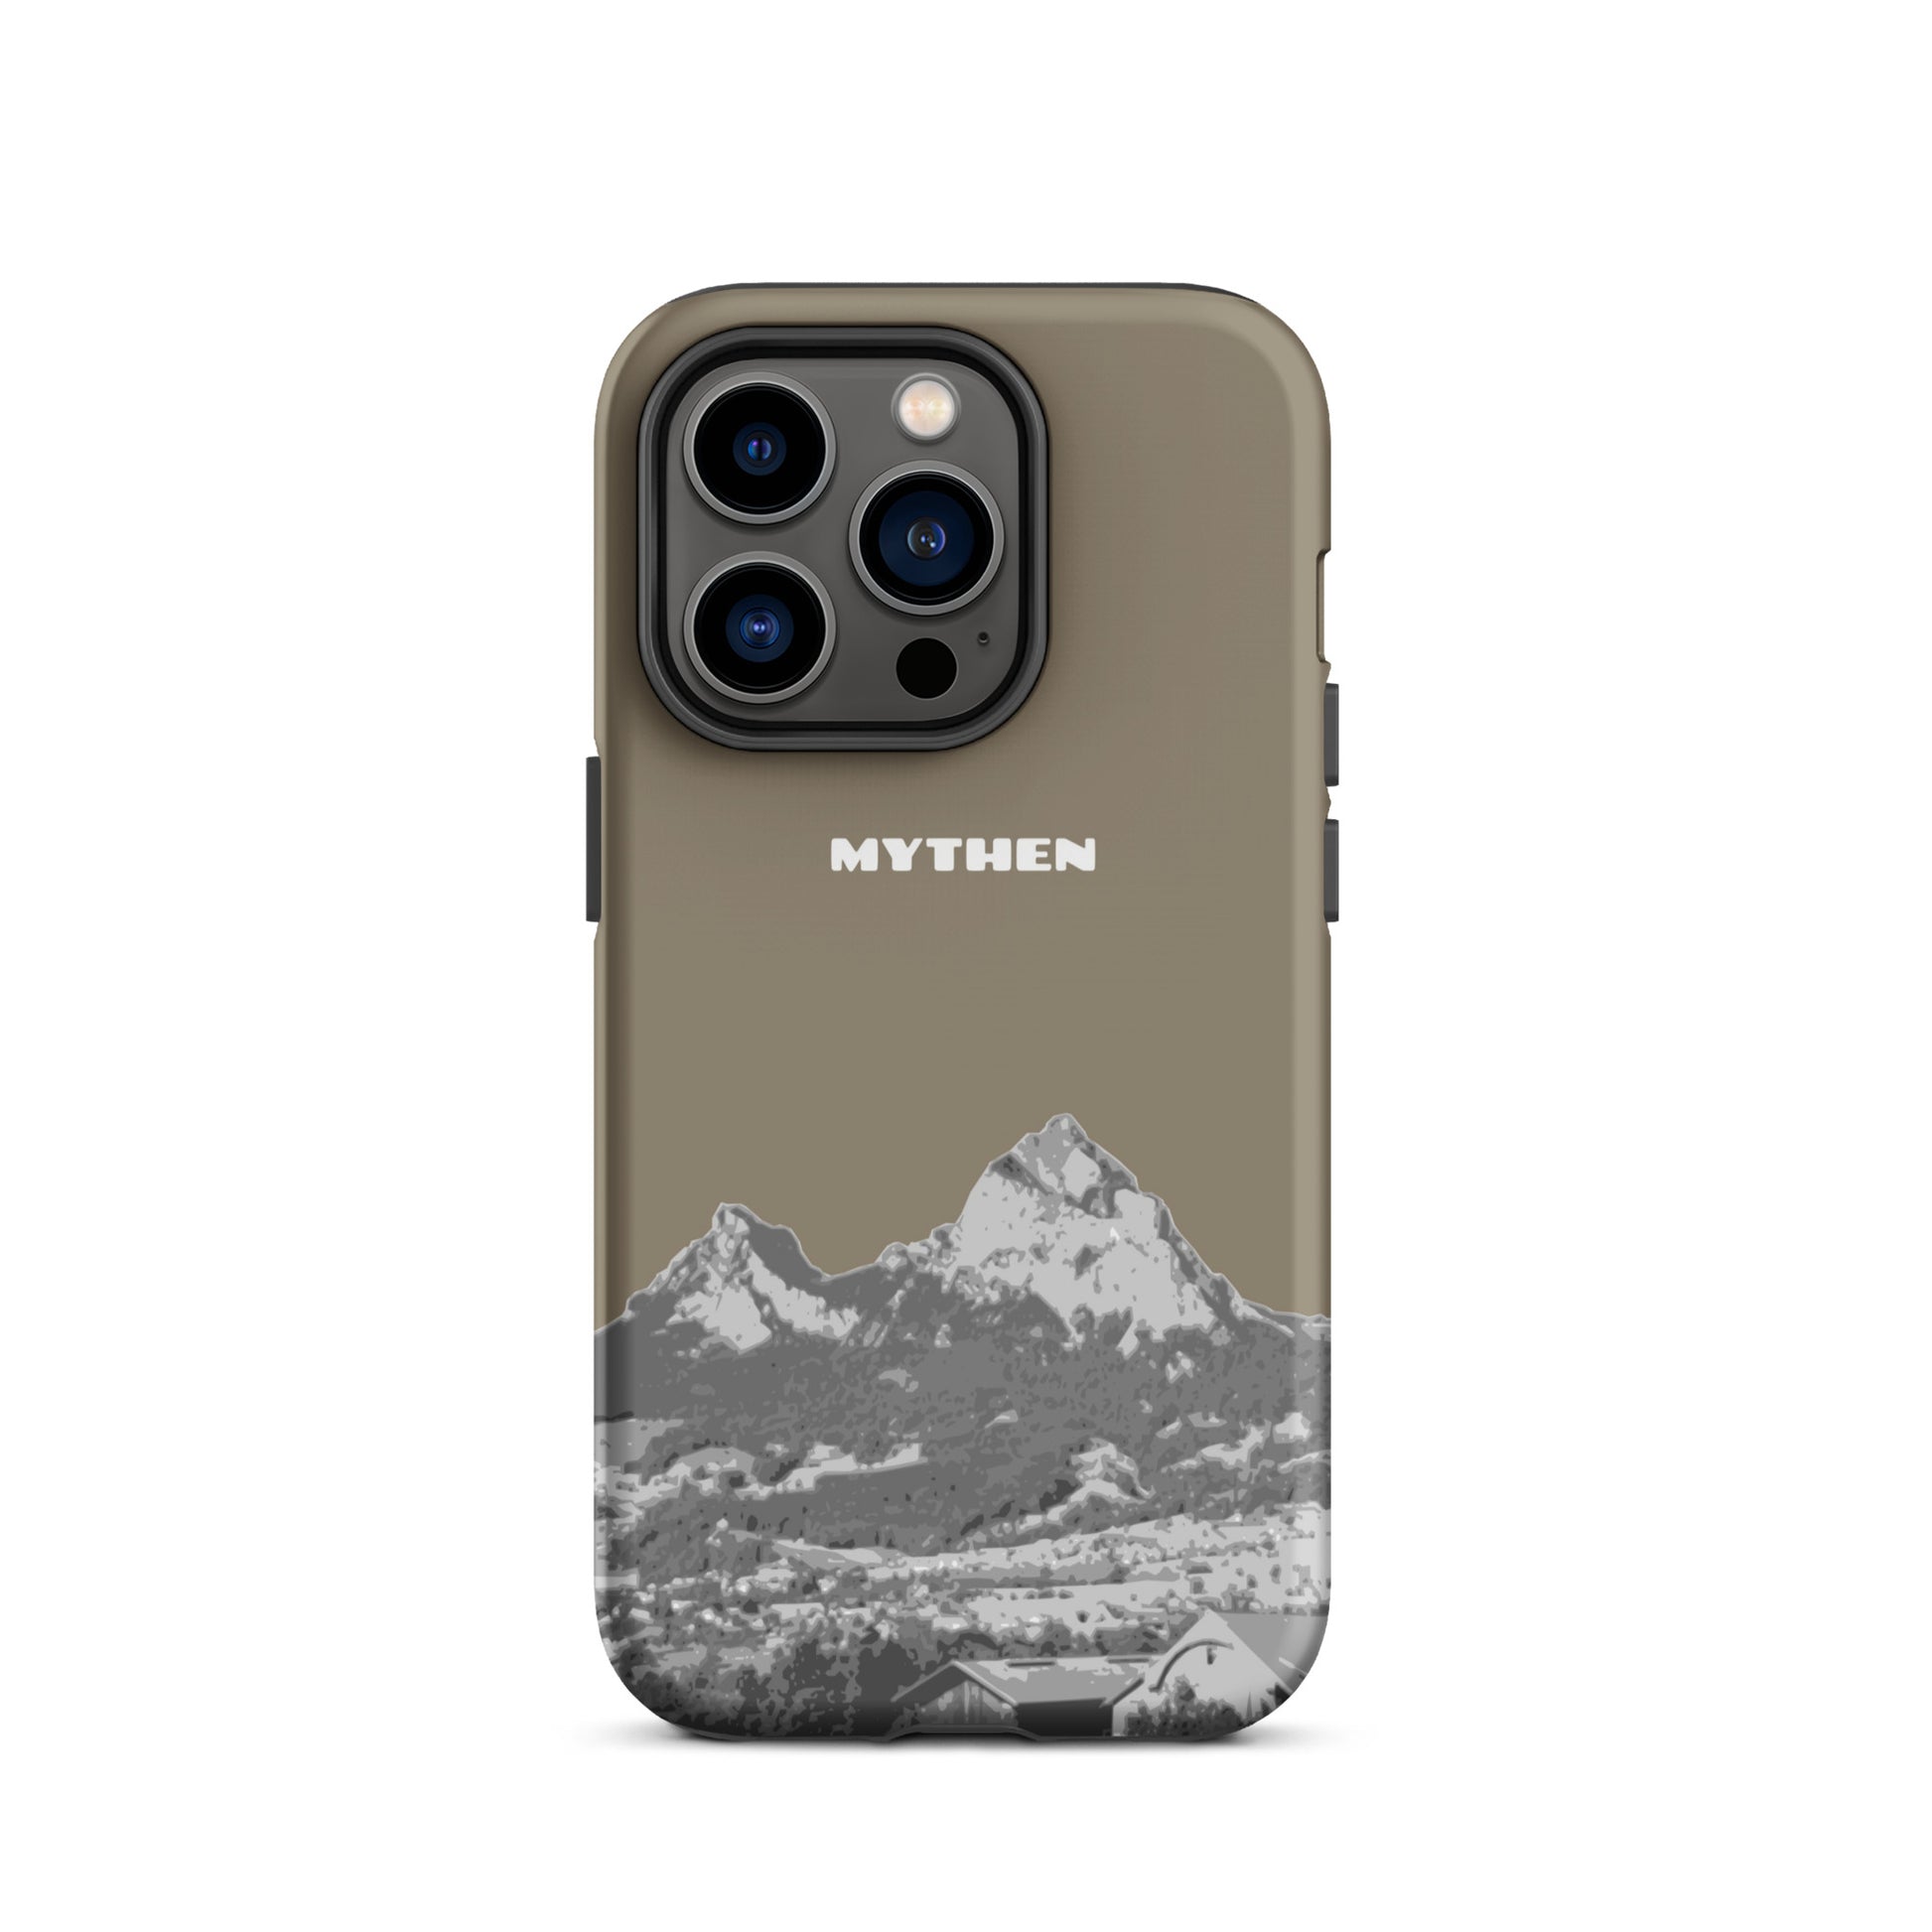 Hülle für das iPhone 14 Pro von Apple in der Farbe Graubraun, dass den Grossen Mythen und den Kleinen Mythen bei Schwyz zeigt. 